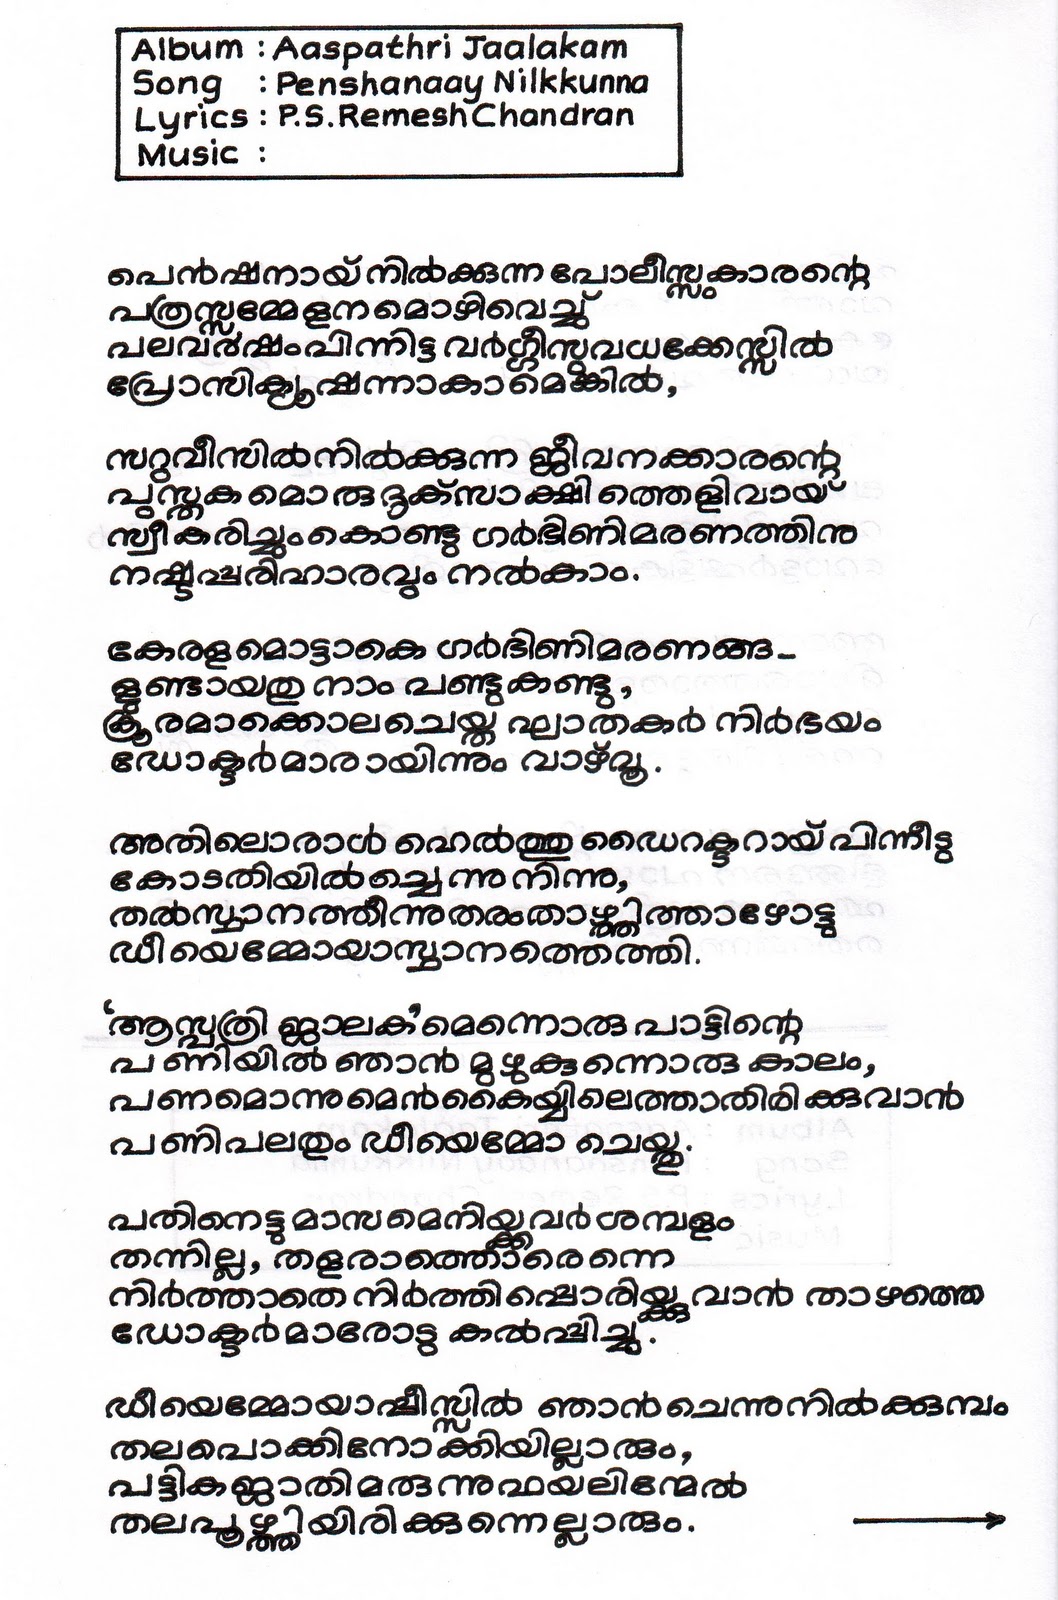 Sahyadri Books Online Trivandrum. Handmade Literature 1